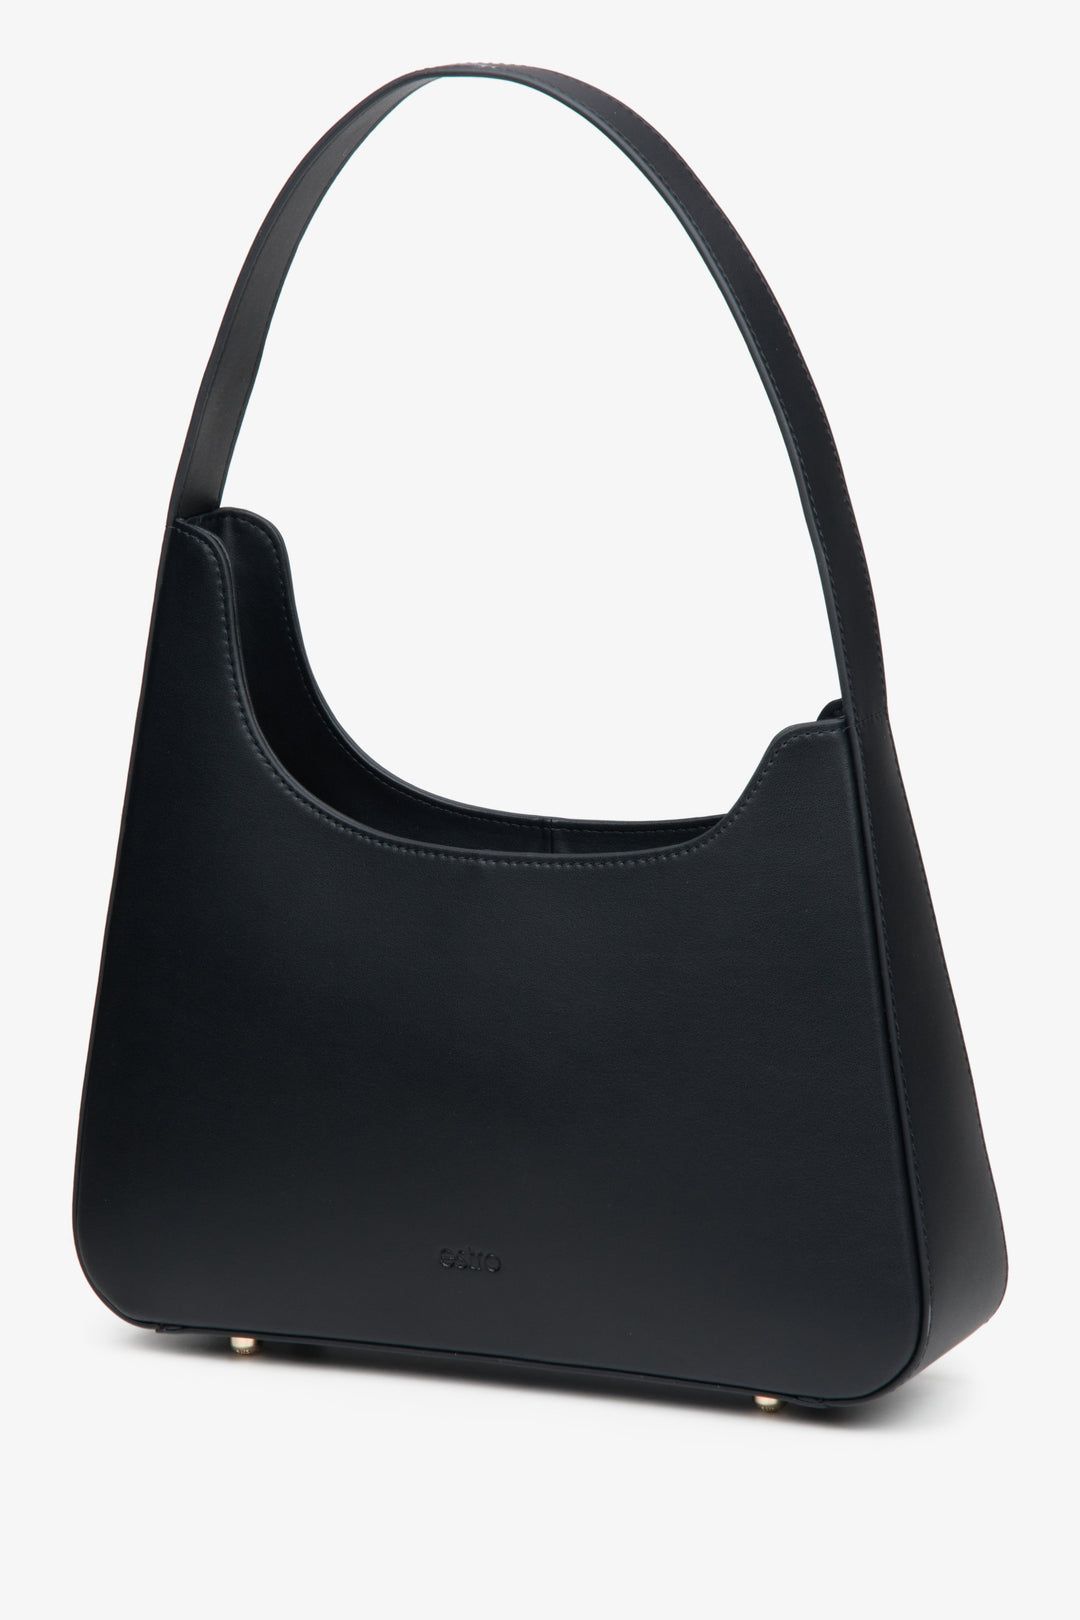 Women's black leather handbag Estro.